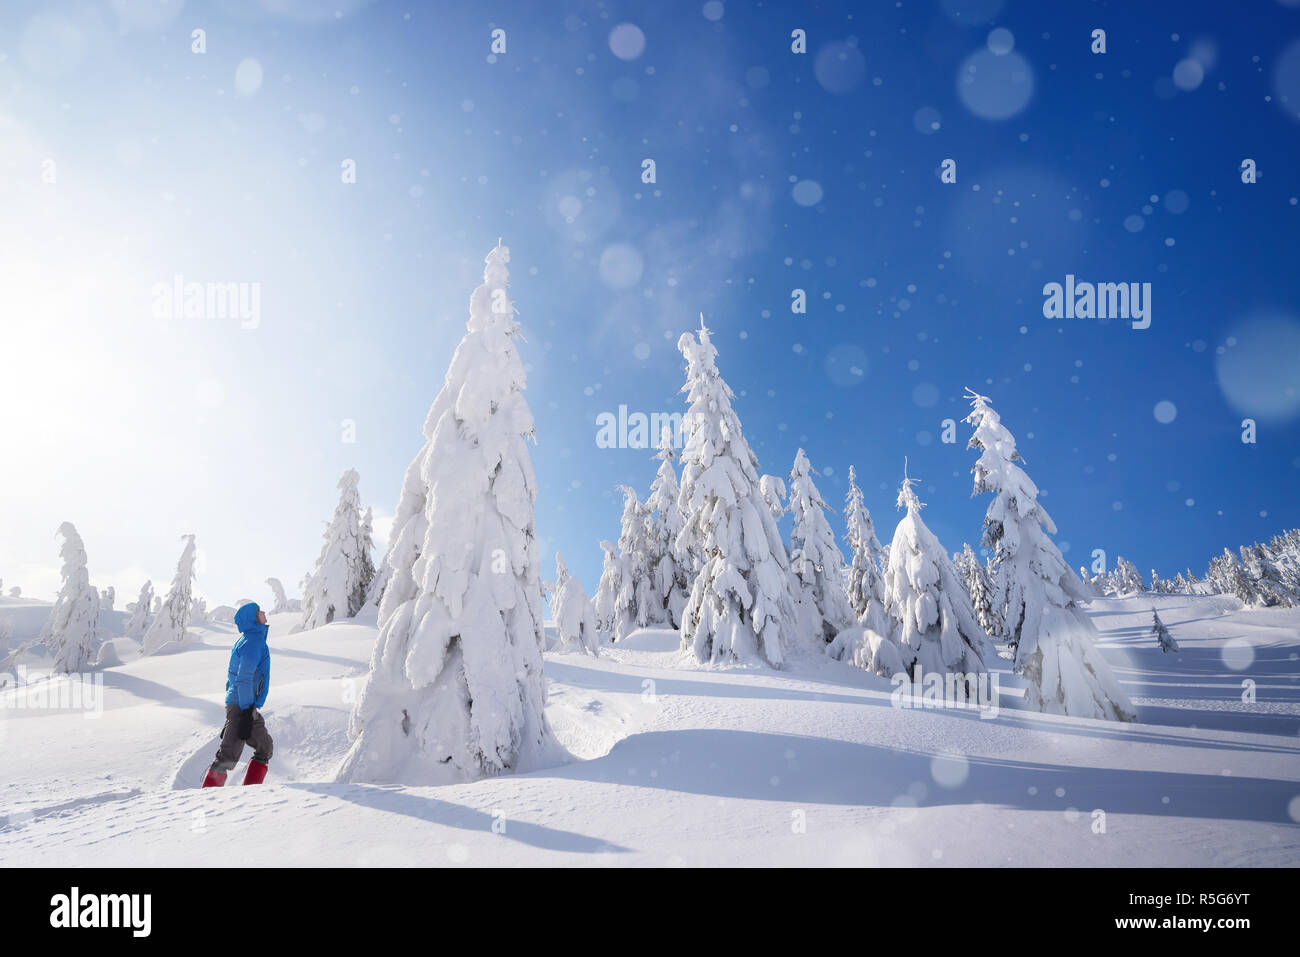 Super Winter Abenteuer in den Bergwald. Der Kerl steht in einer schneeverwehung und blickt auf eine große schneebedeckte Tanne. Sonniges Wetter mit Schneefall Stockfoto